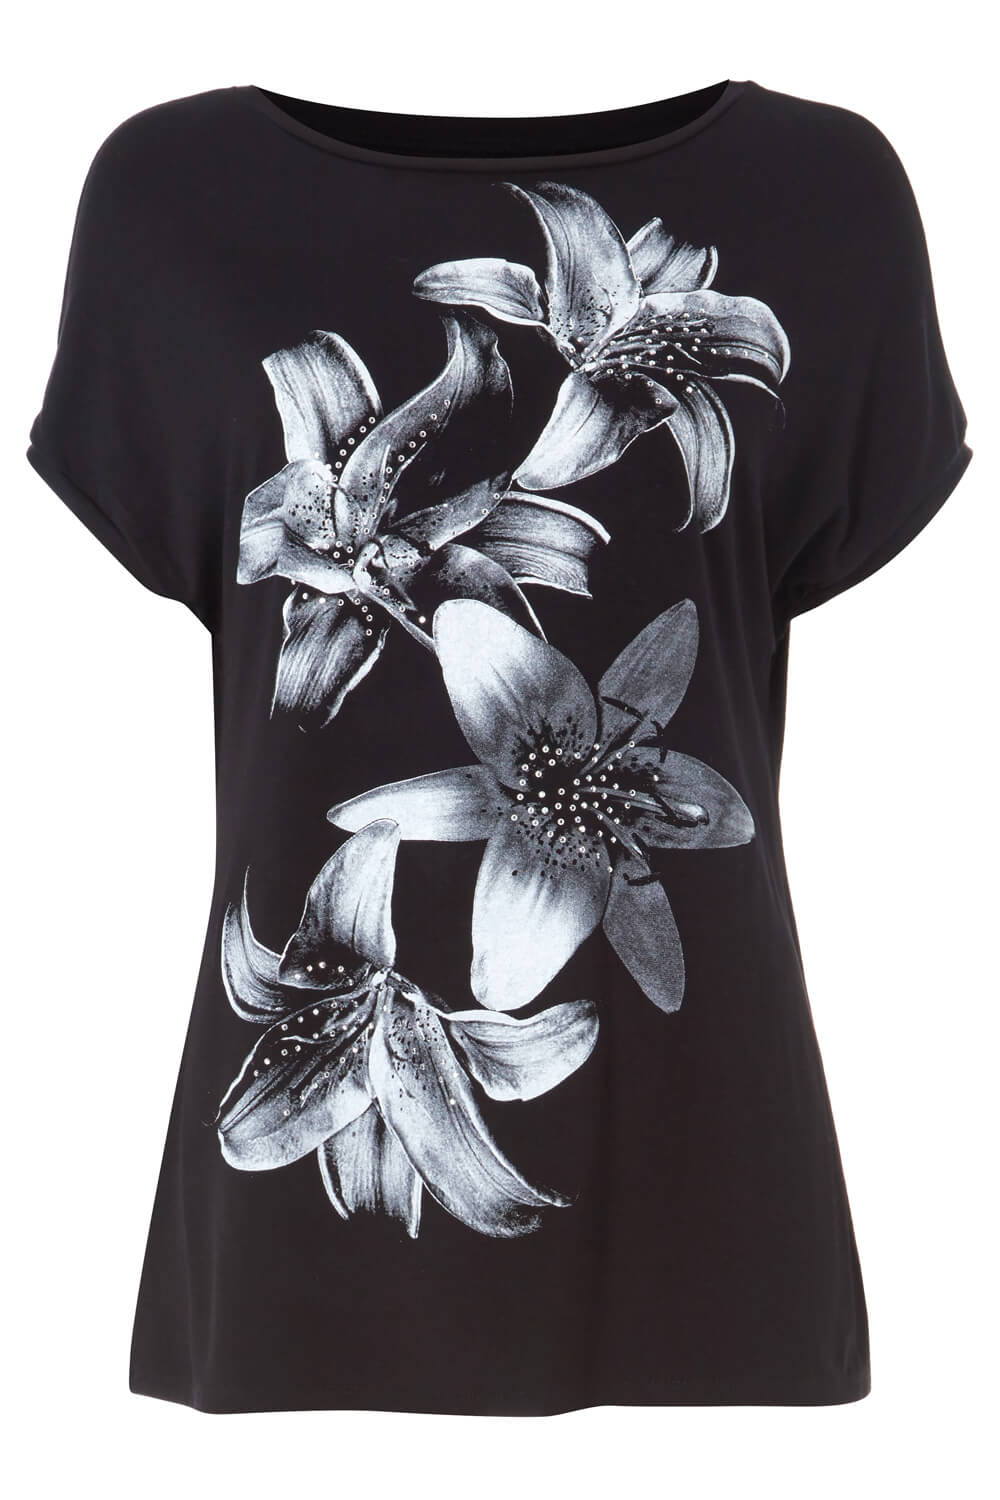 Black Floral Lily Print Embellished T-Shirt, Image 5 of 5